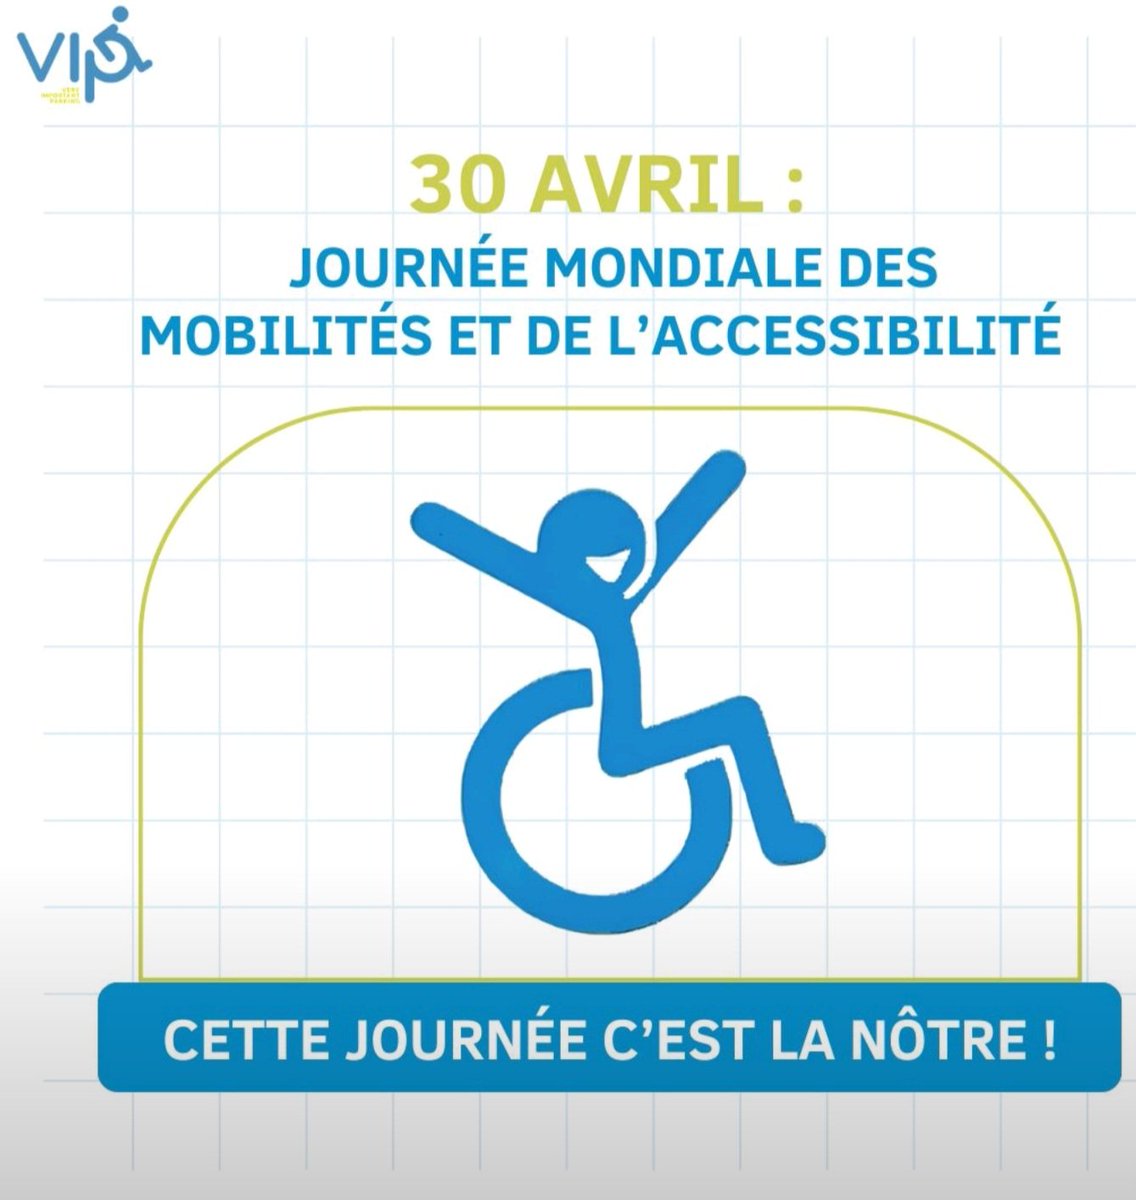 Le 30 avril, c'est la Journée Mondiale des Mobilités et de l'Accessibilité. 🌍 Un événement qui nous concerne tous. 👥 Pourquoi ? Parce que l'accès à la mobilité est un droit fondamental. Parce que tout le monde doit pouvoir se déplacer Librement sans entraves #MobilitéPourTous